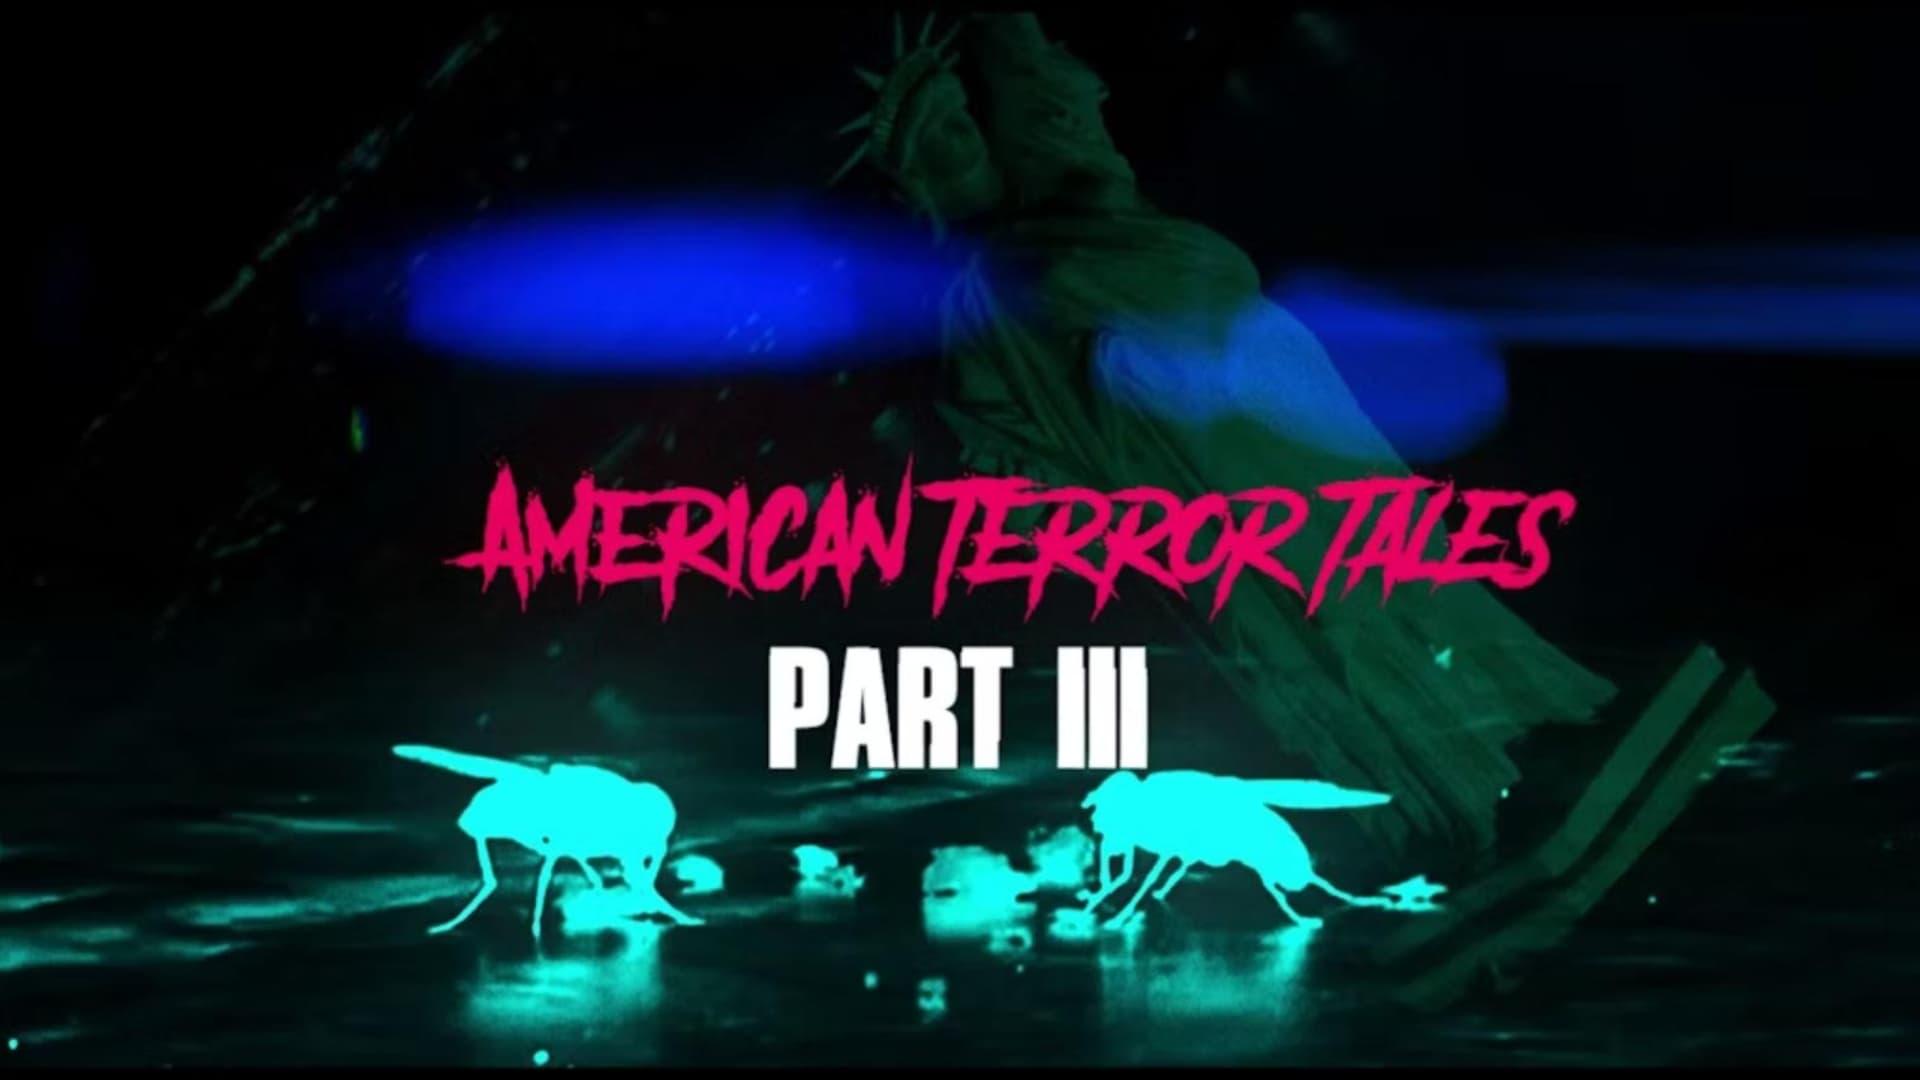 American Terror Tales 3 backdrop